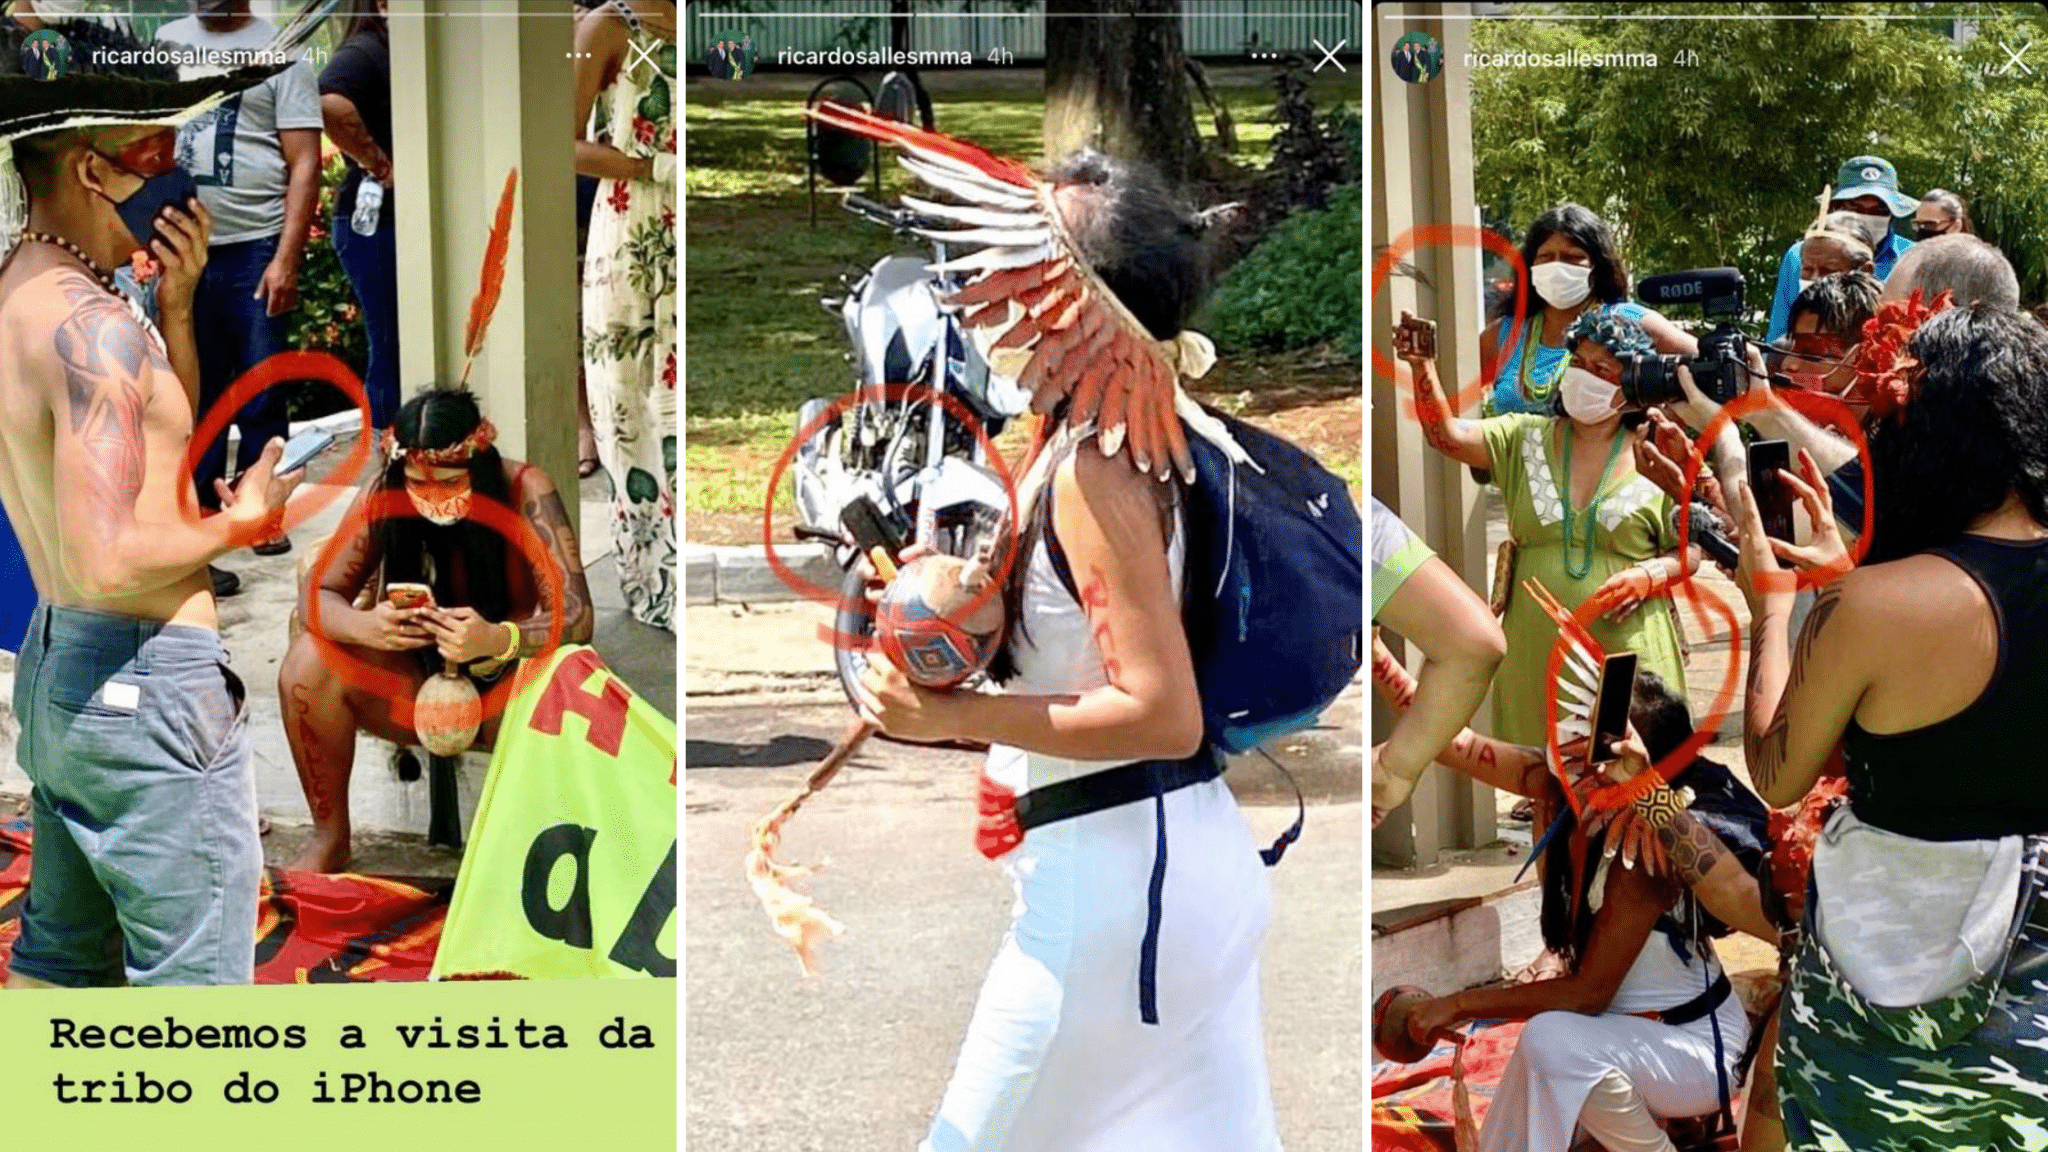 Ricardo Salles tenta ridicularizar indígenas no Instagram